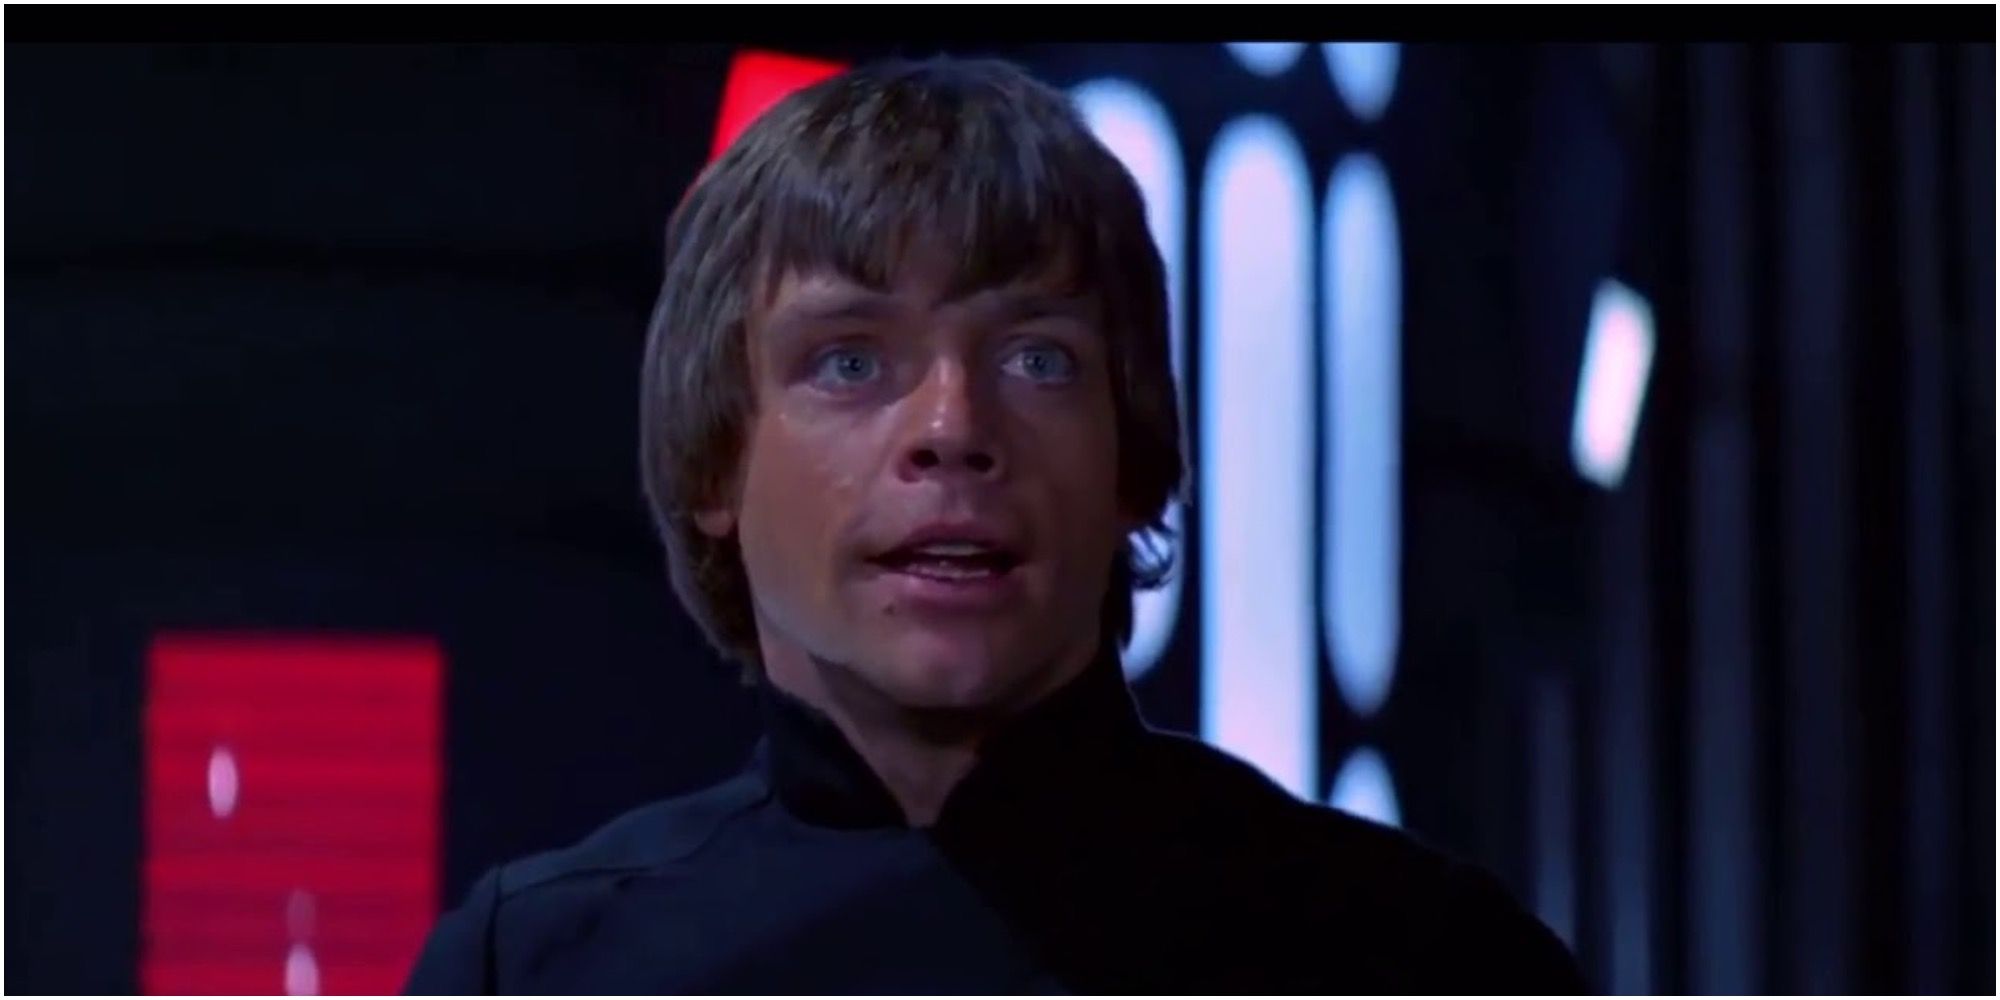 Luke Skywalker tells the Emperor he has lost